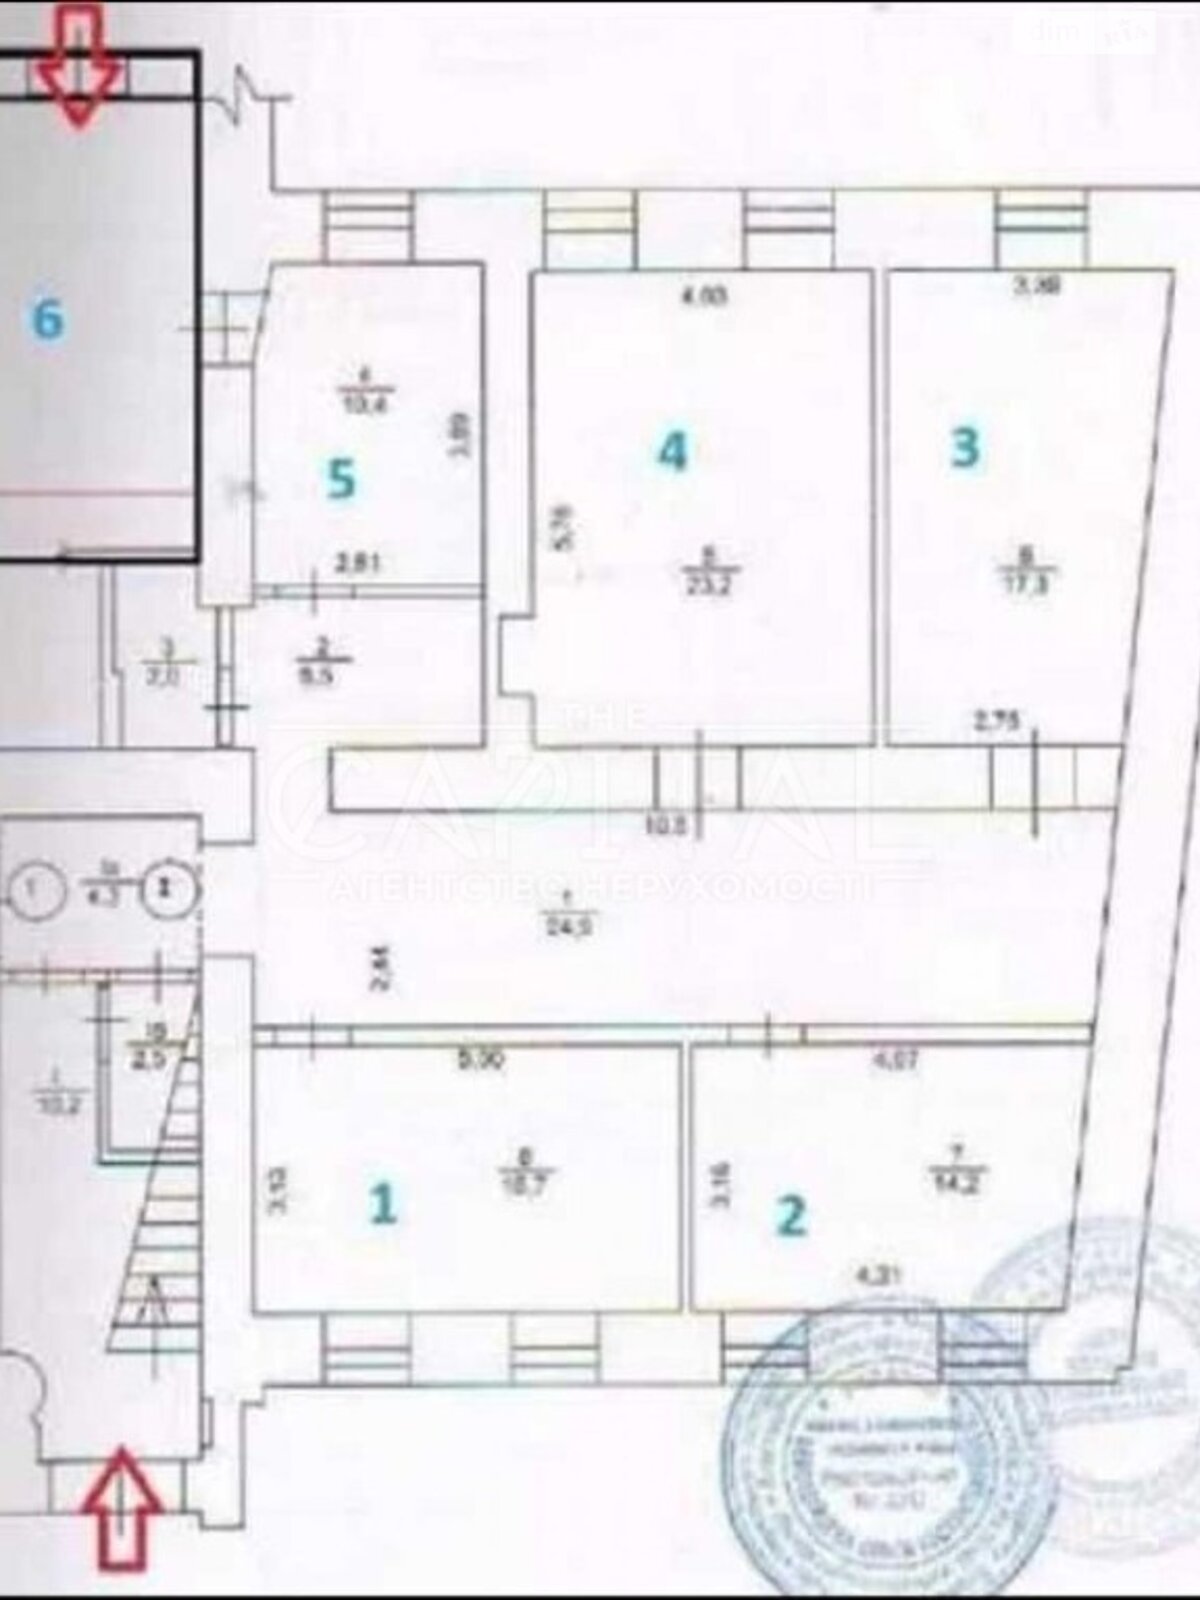 Аренда офисного помещения в Киеве, Вознесенский спуск 18, помещений - 5, этаж - 1 фото 1